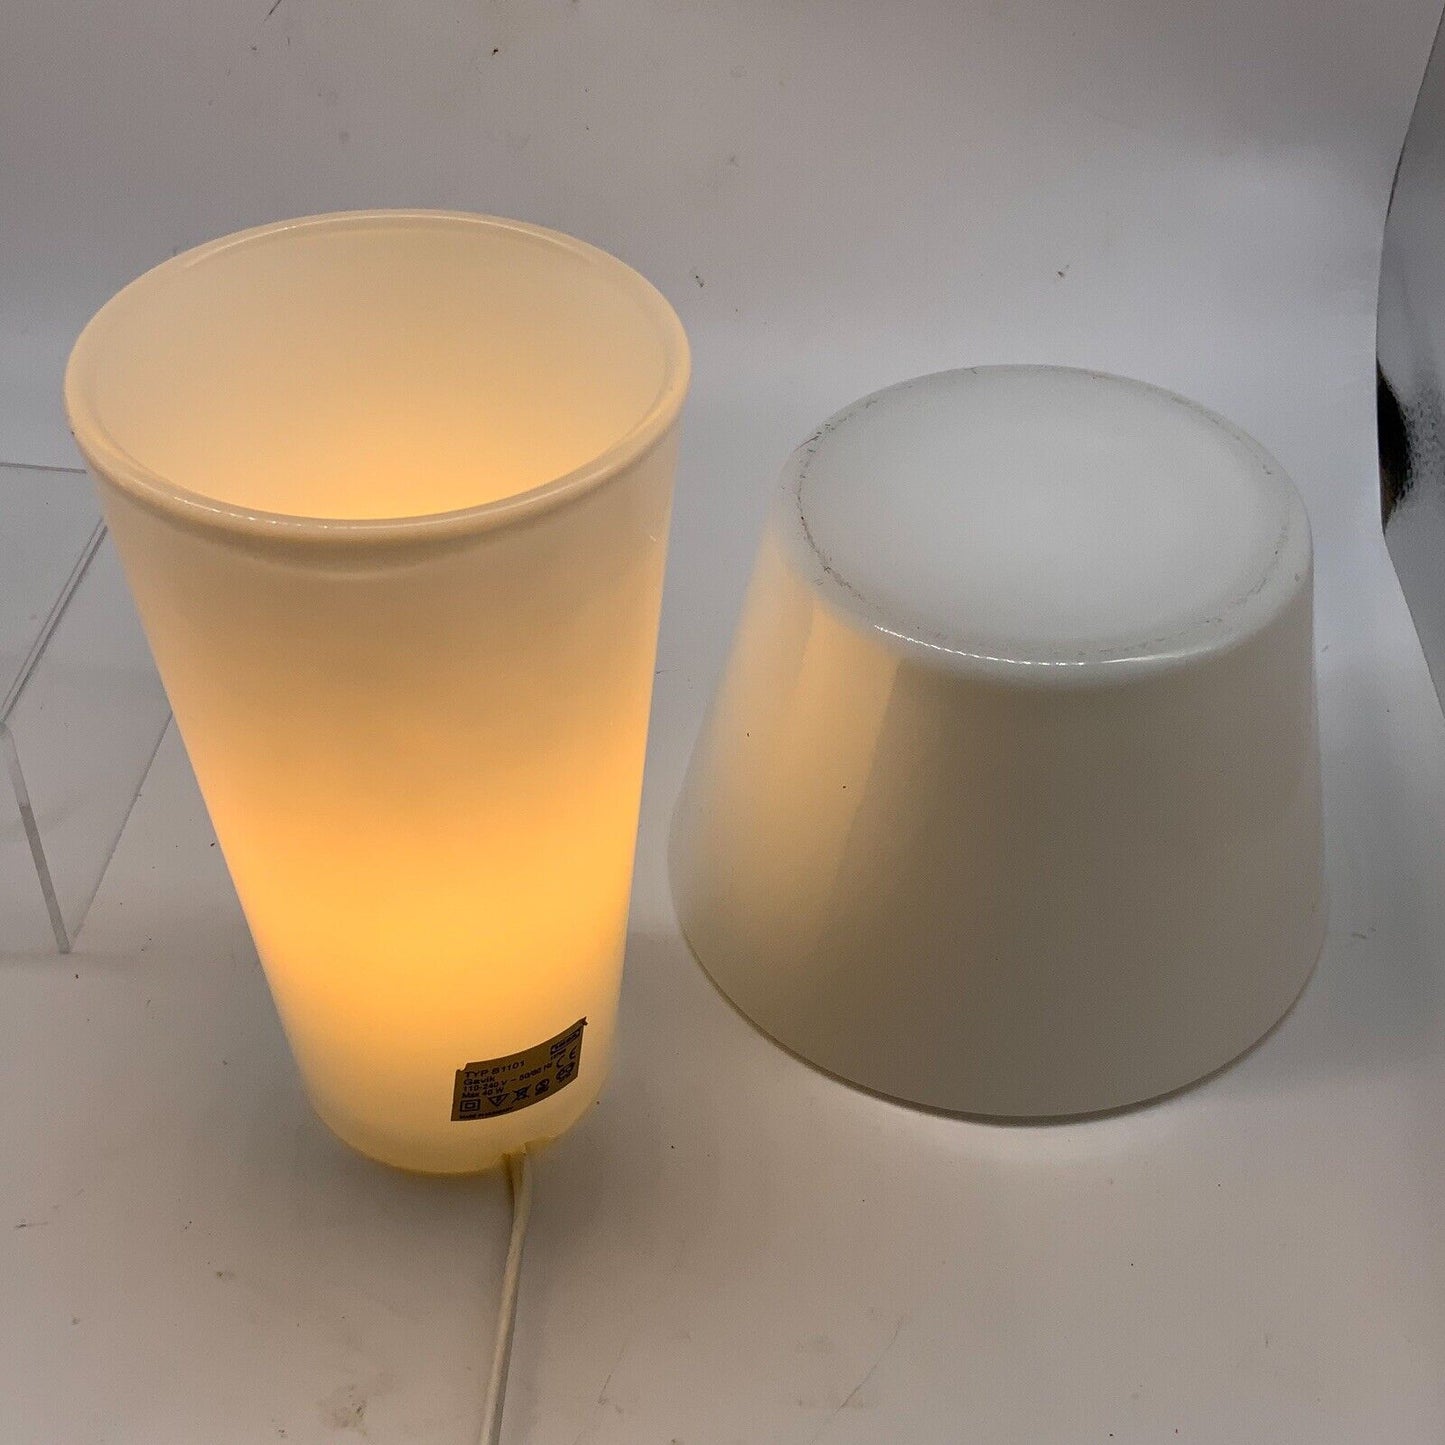 IKEA Gavik Mushroom Glass Lamp Helena Svensson Modernist UFO Spaceage